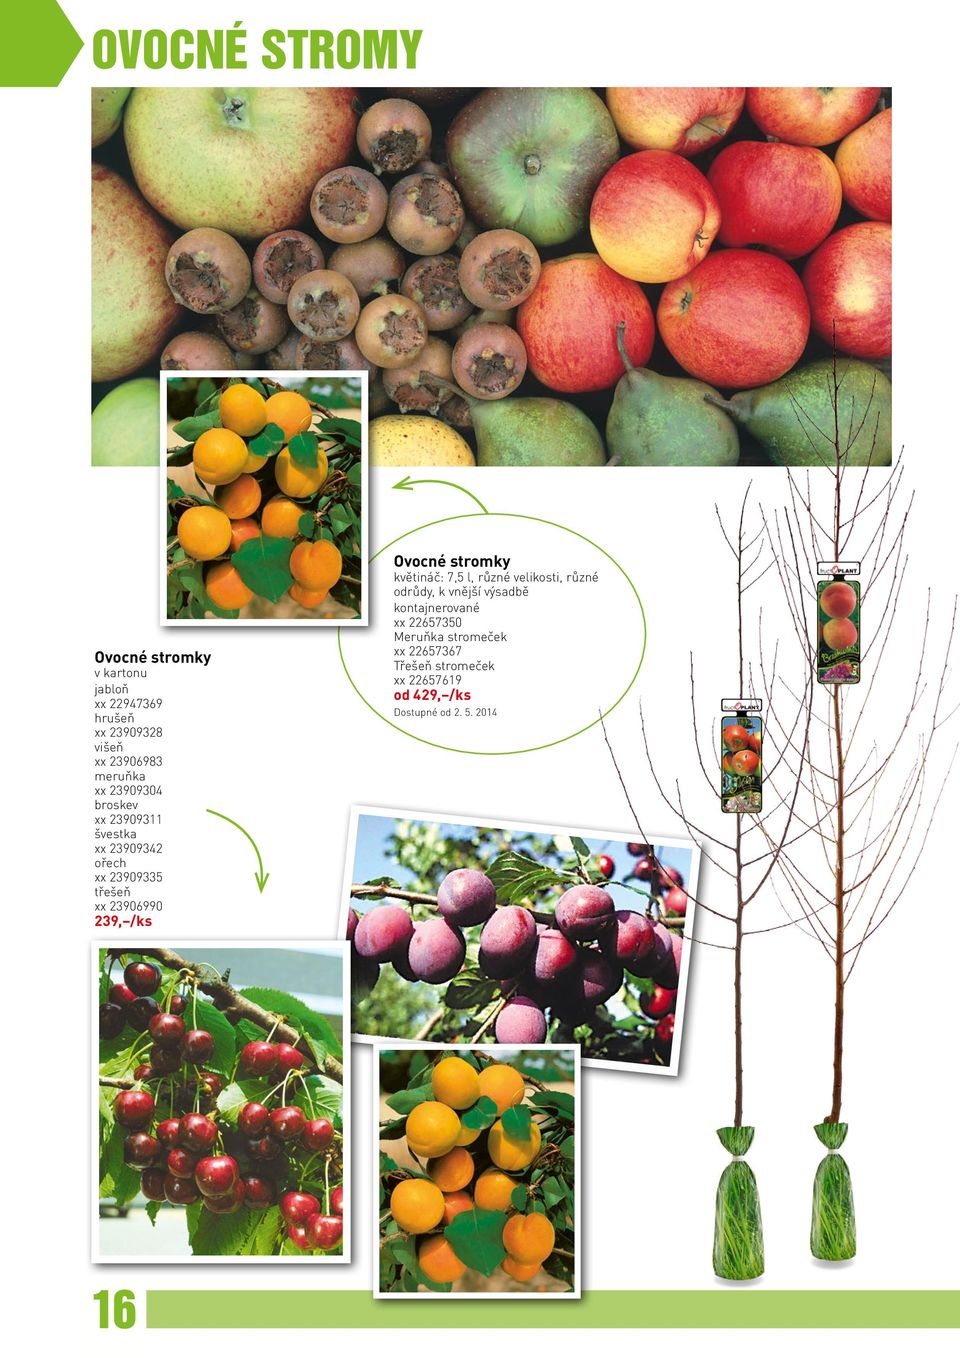 239, /ks Ovocné stromky květináč: 7,5 l, různé velikosti, různé odrůdy, k vnější výsadbě